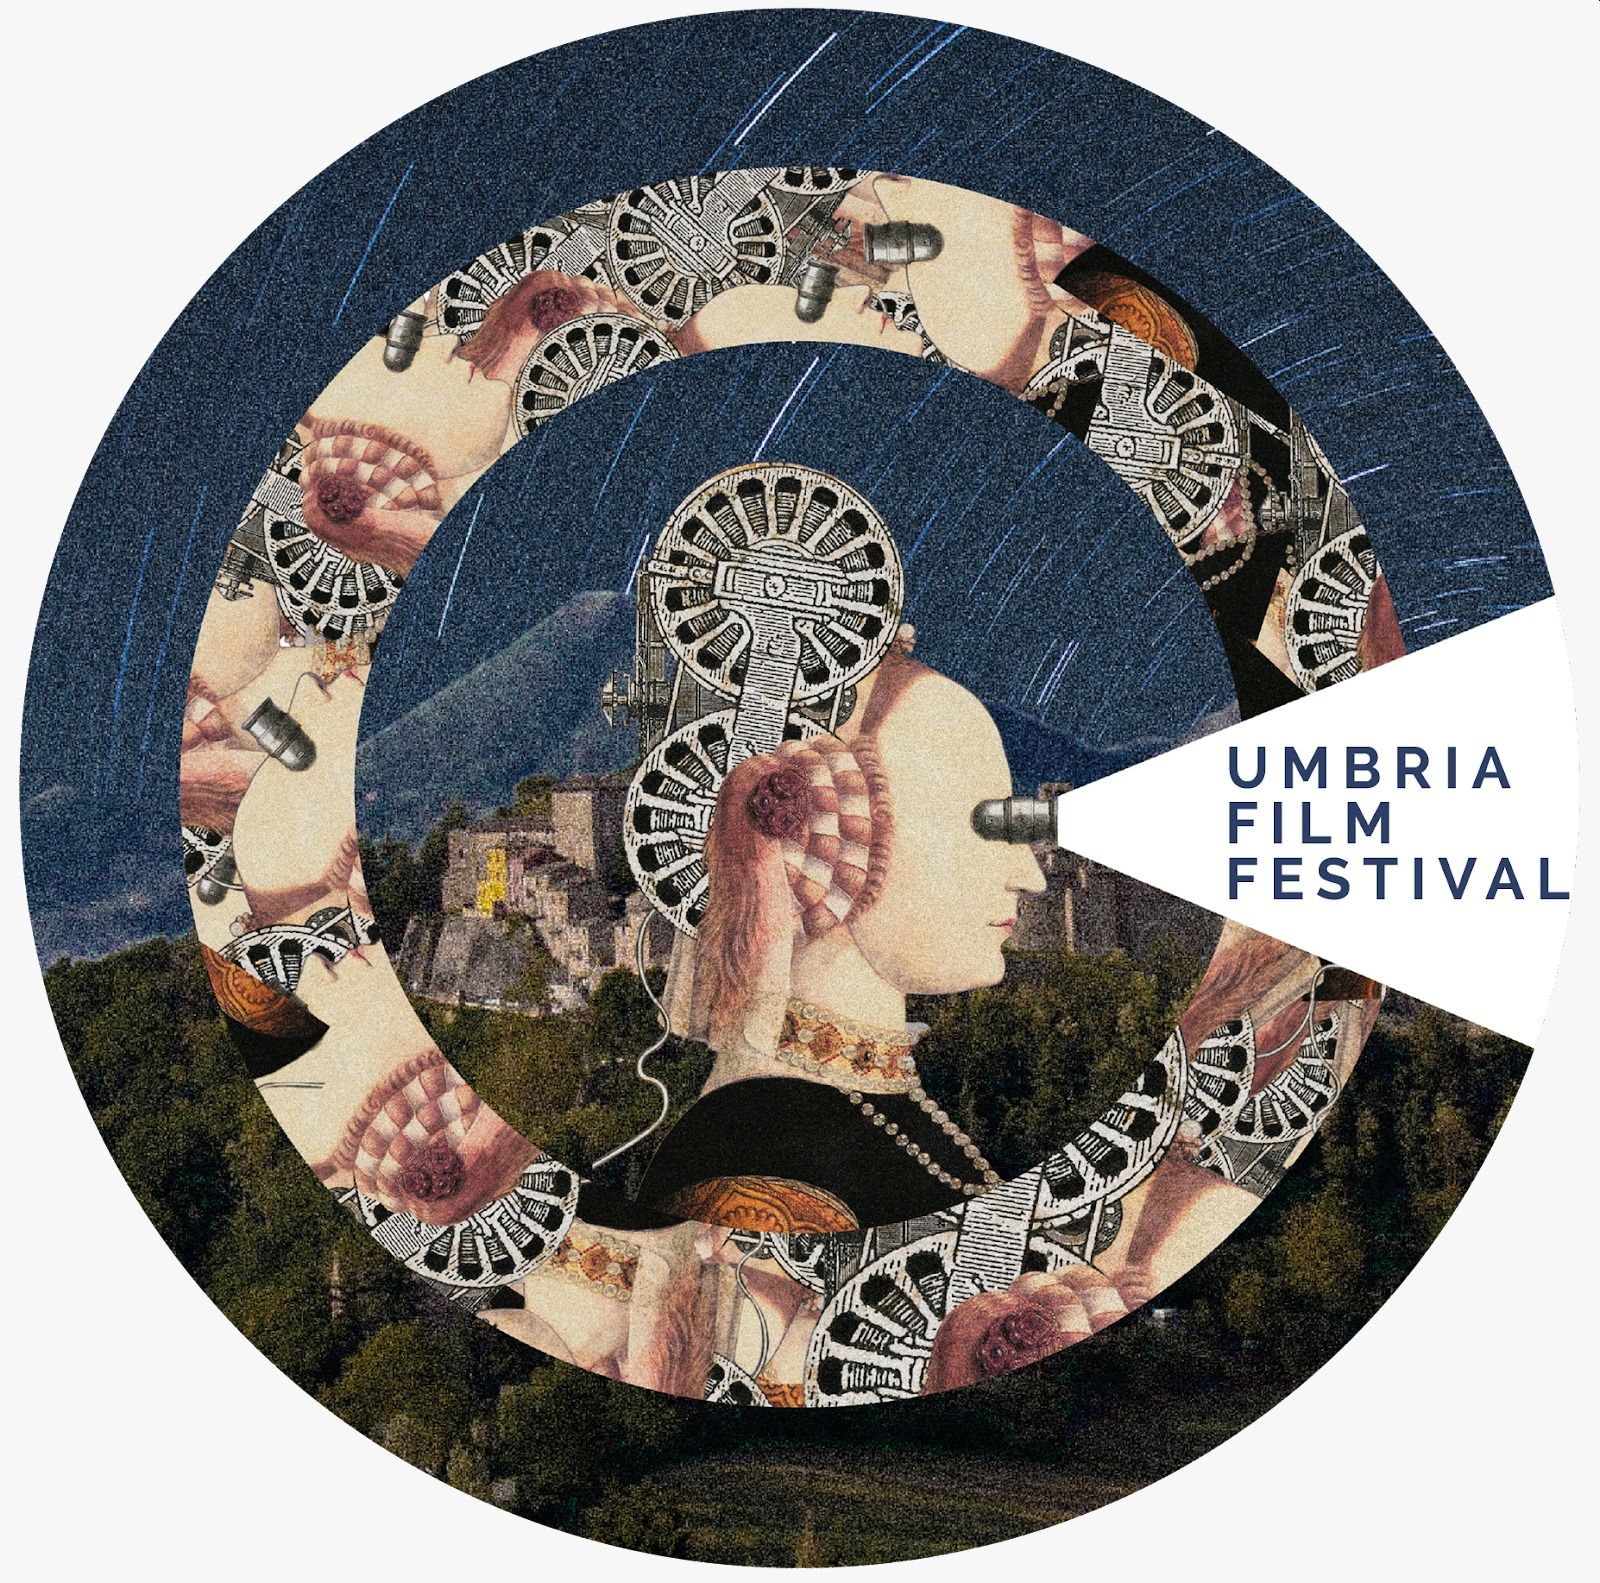 Umbria Film Festival